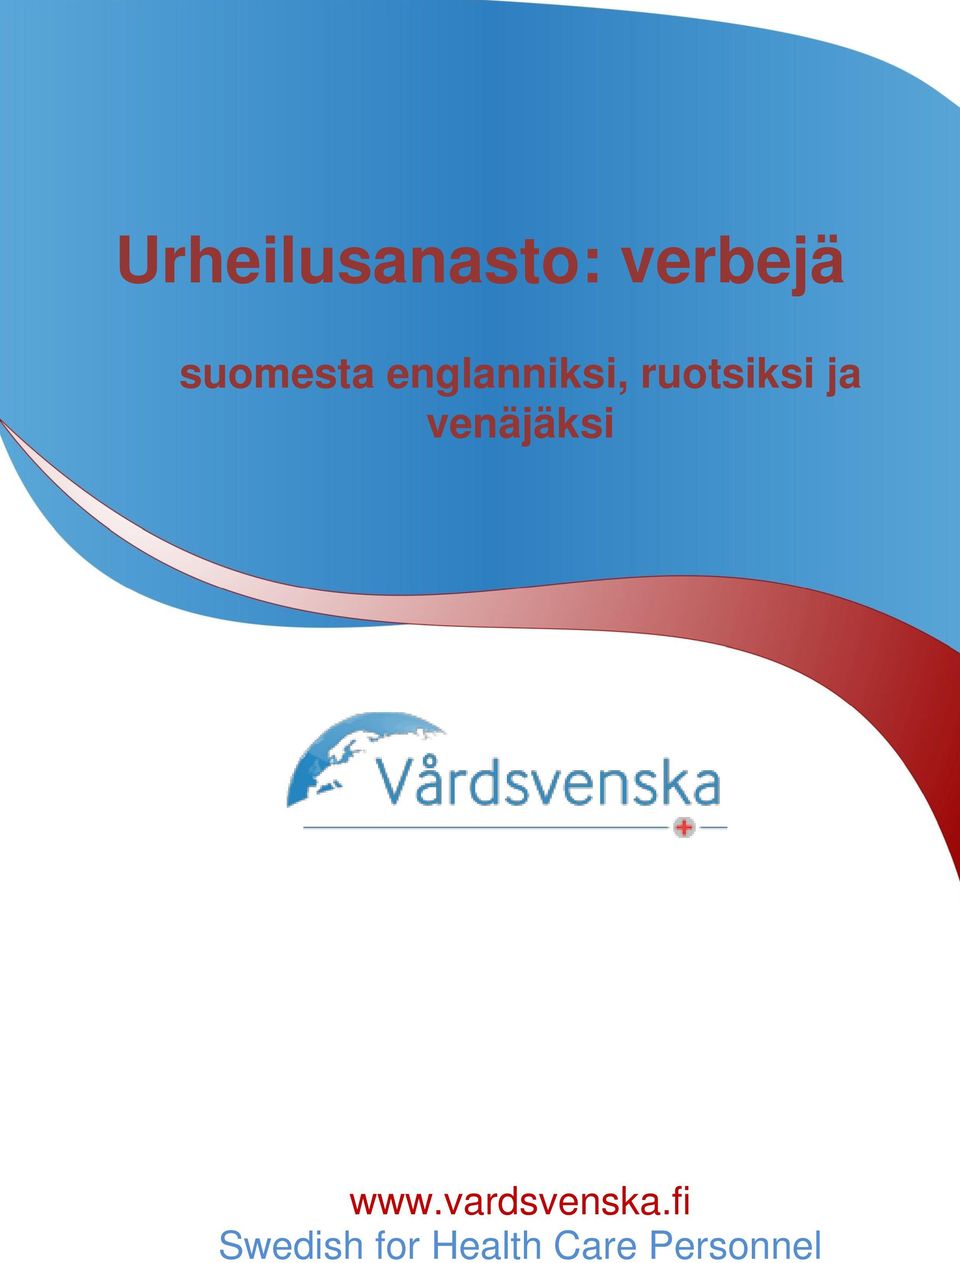 www.vardsvenska.